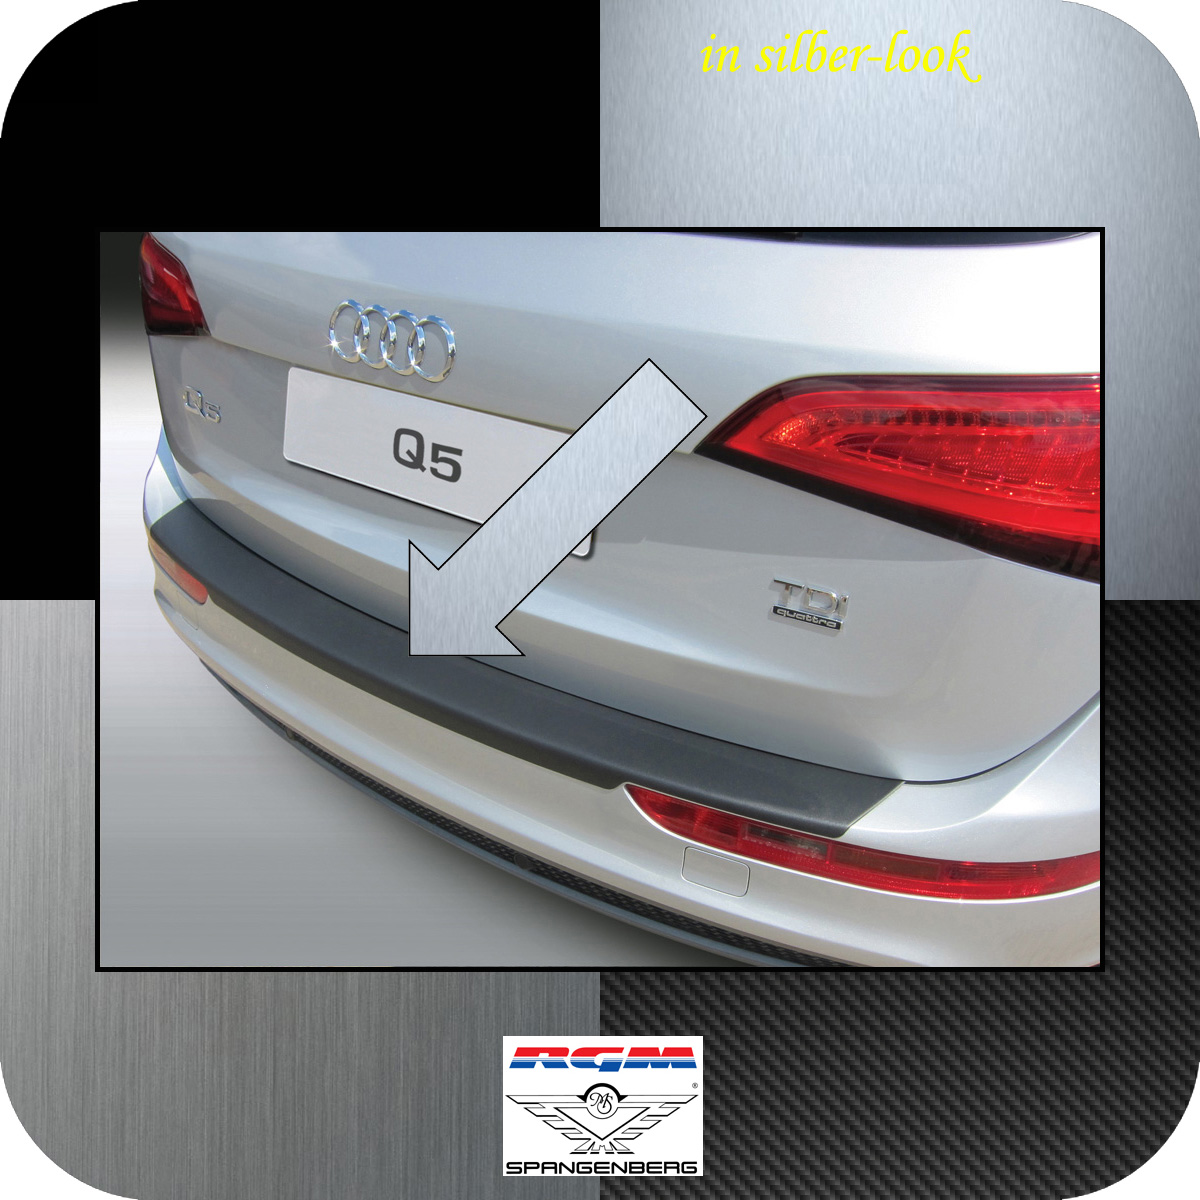 Ladekantenschutz Silber-Look Audi Q5 SUV Kombi auch SQ5 Baujahre 2008-16 3506475